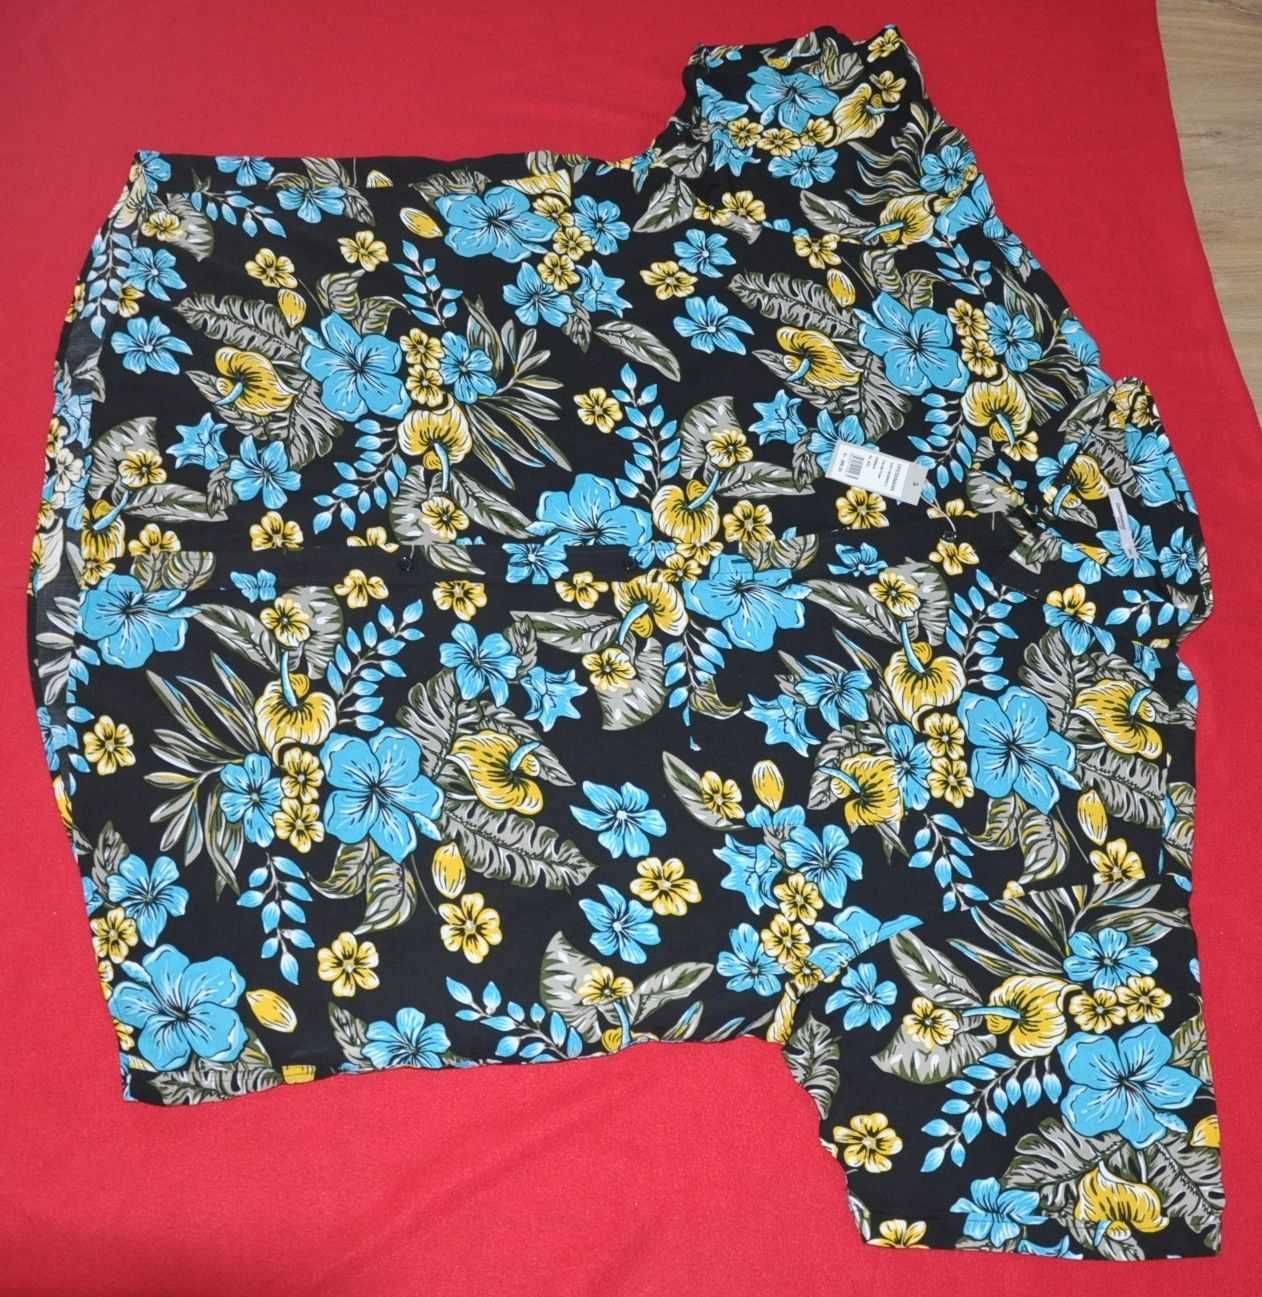 NOWA duża koszula Dressmann 57-58 ( 8 XL ) z krótkim rękawem, kolorowa